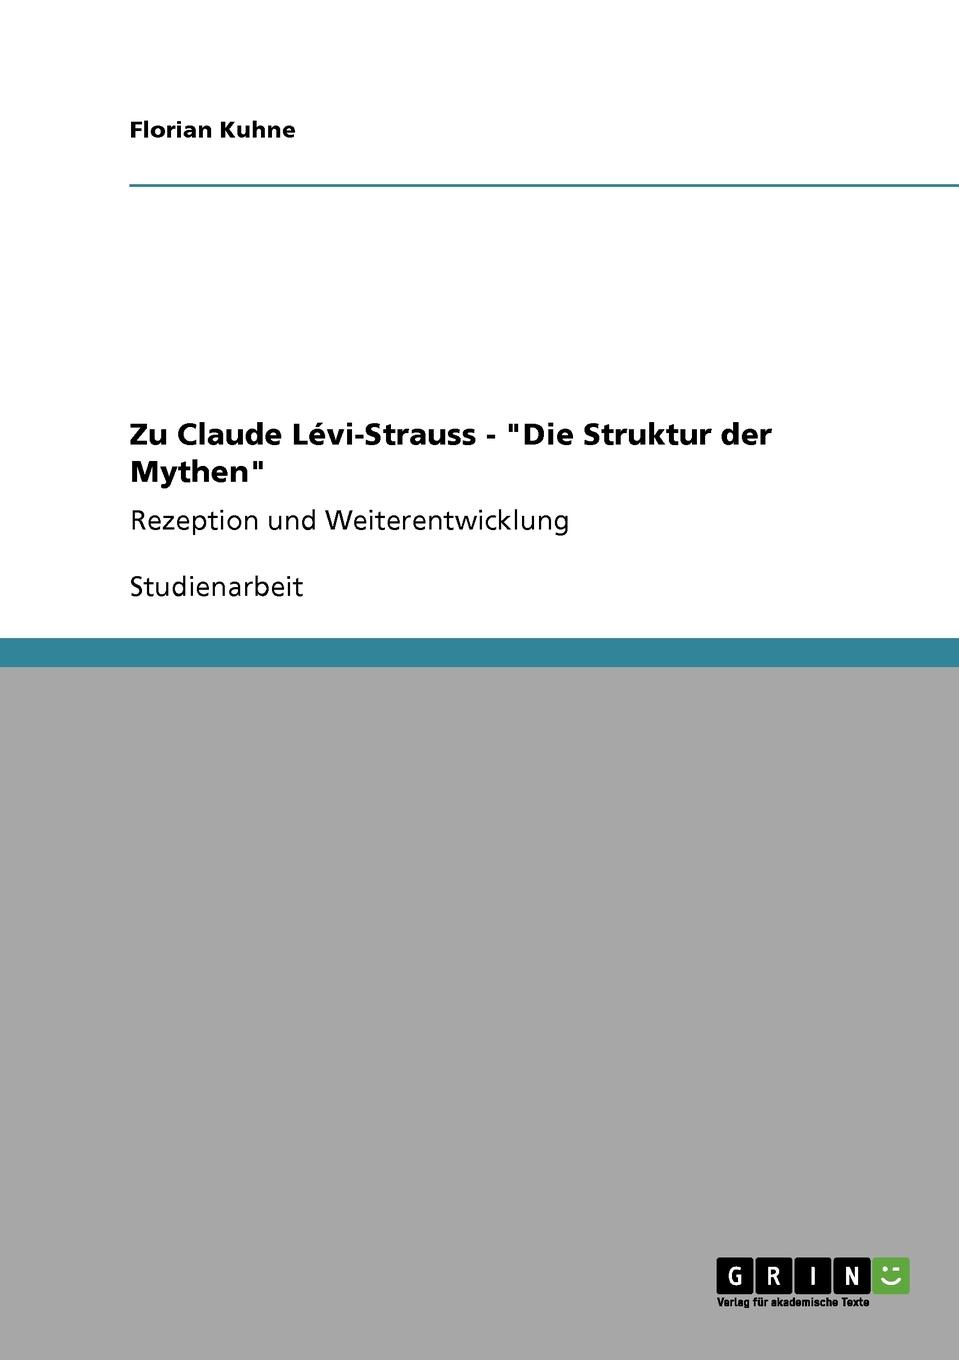 Florian Kuhne Zu Claude Levi-Strauss - 